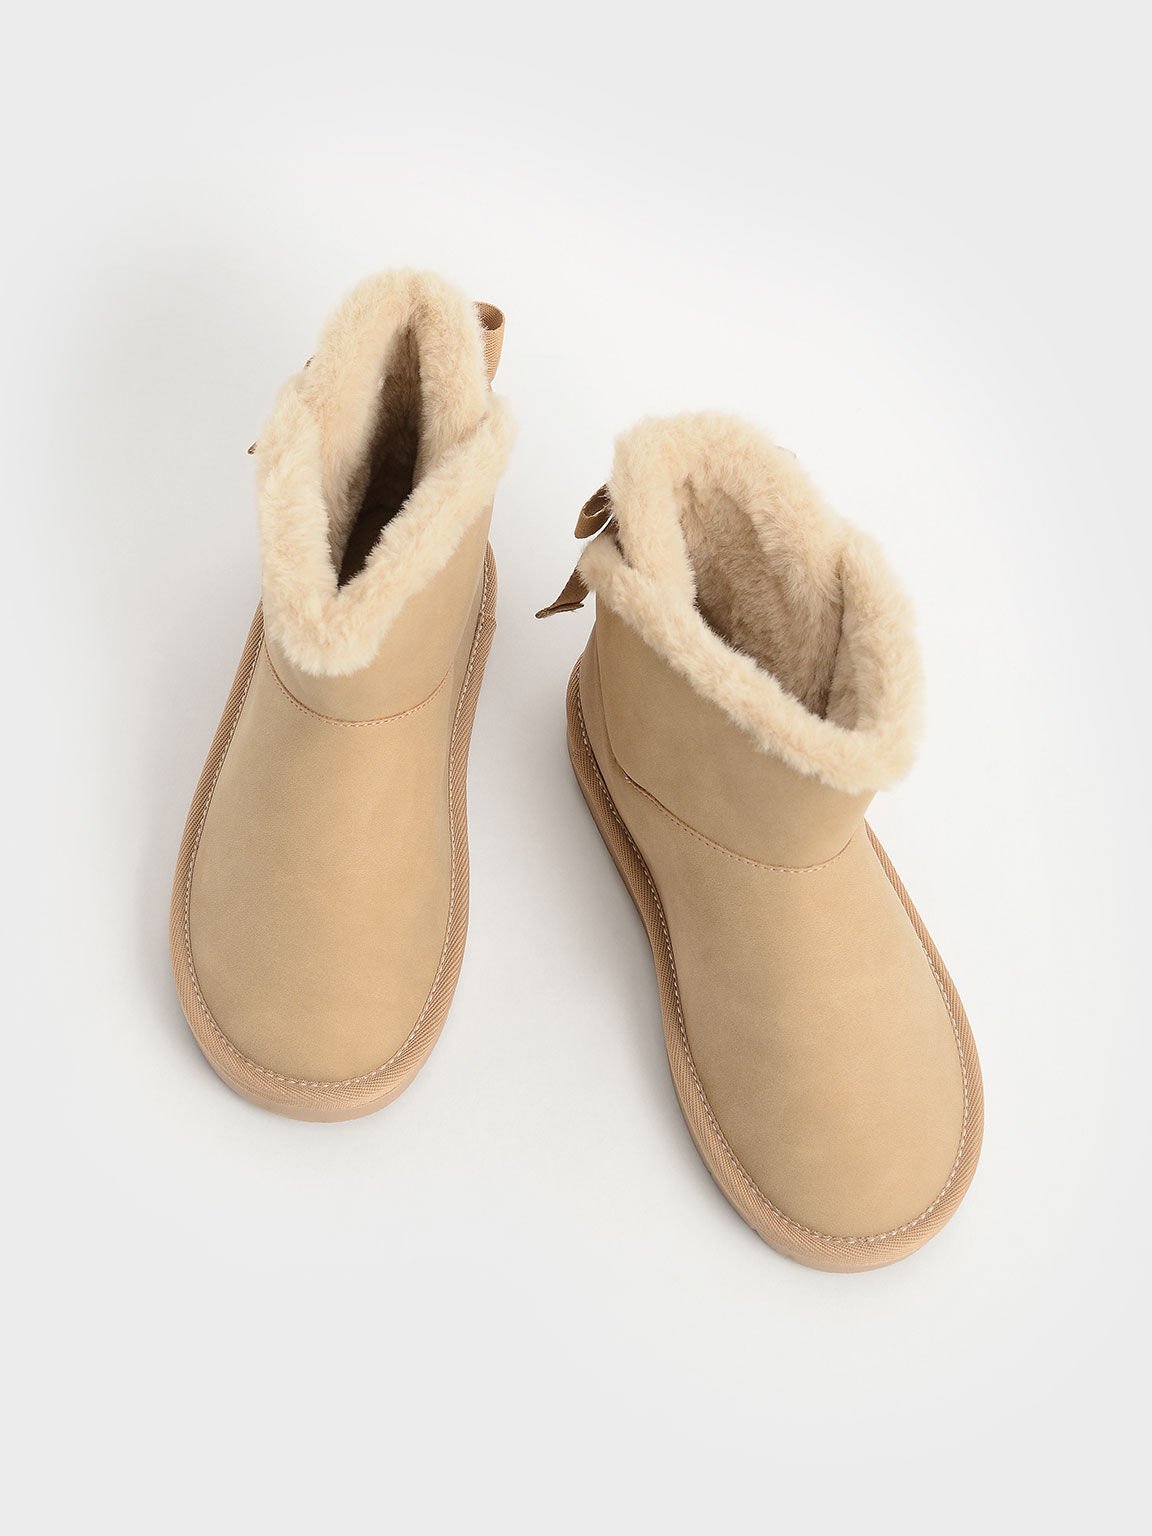 Girls' Fur-Trimmed Slip-On Ankle Boots, Camel, hi-res